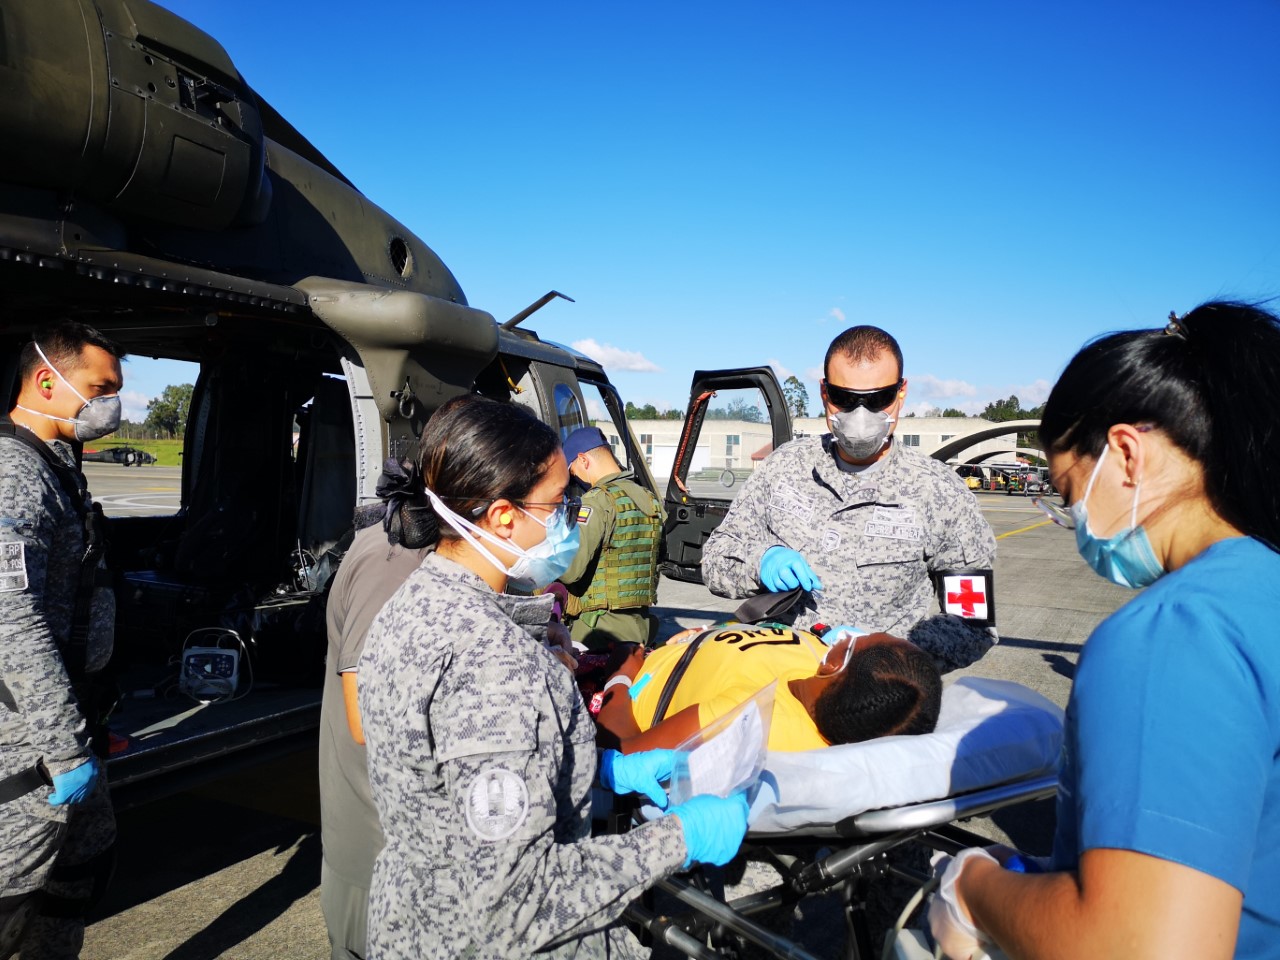 Tripulación del helicóptero Ángel salvó la vida de una mujer en grave estado de salud        